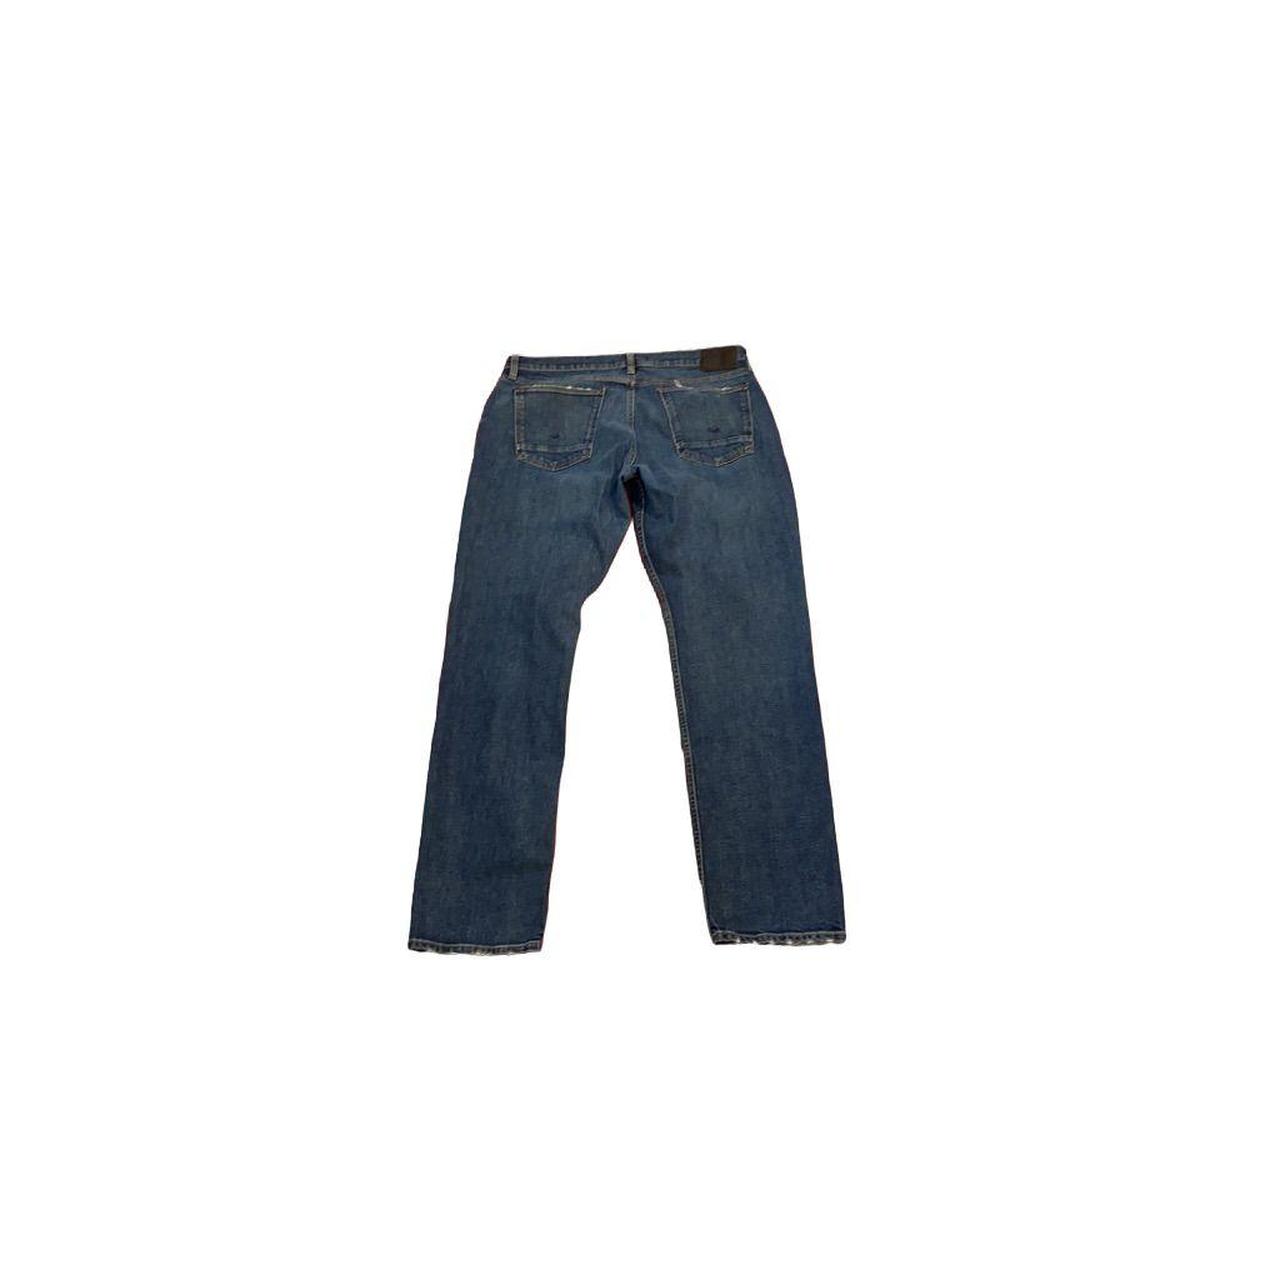 Hudson Jeans Men's Blue Jeans (2)